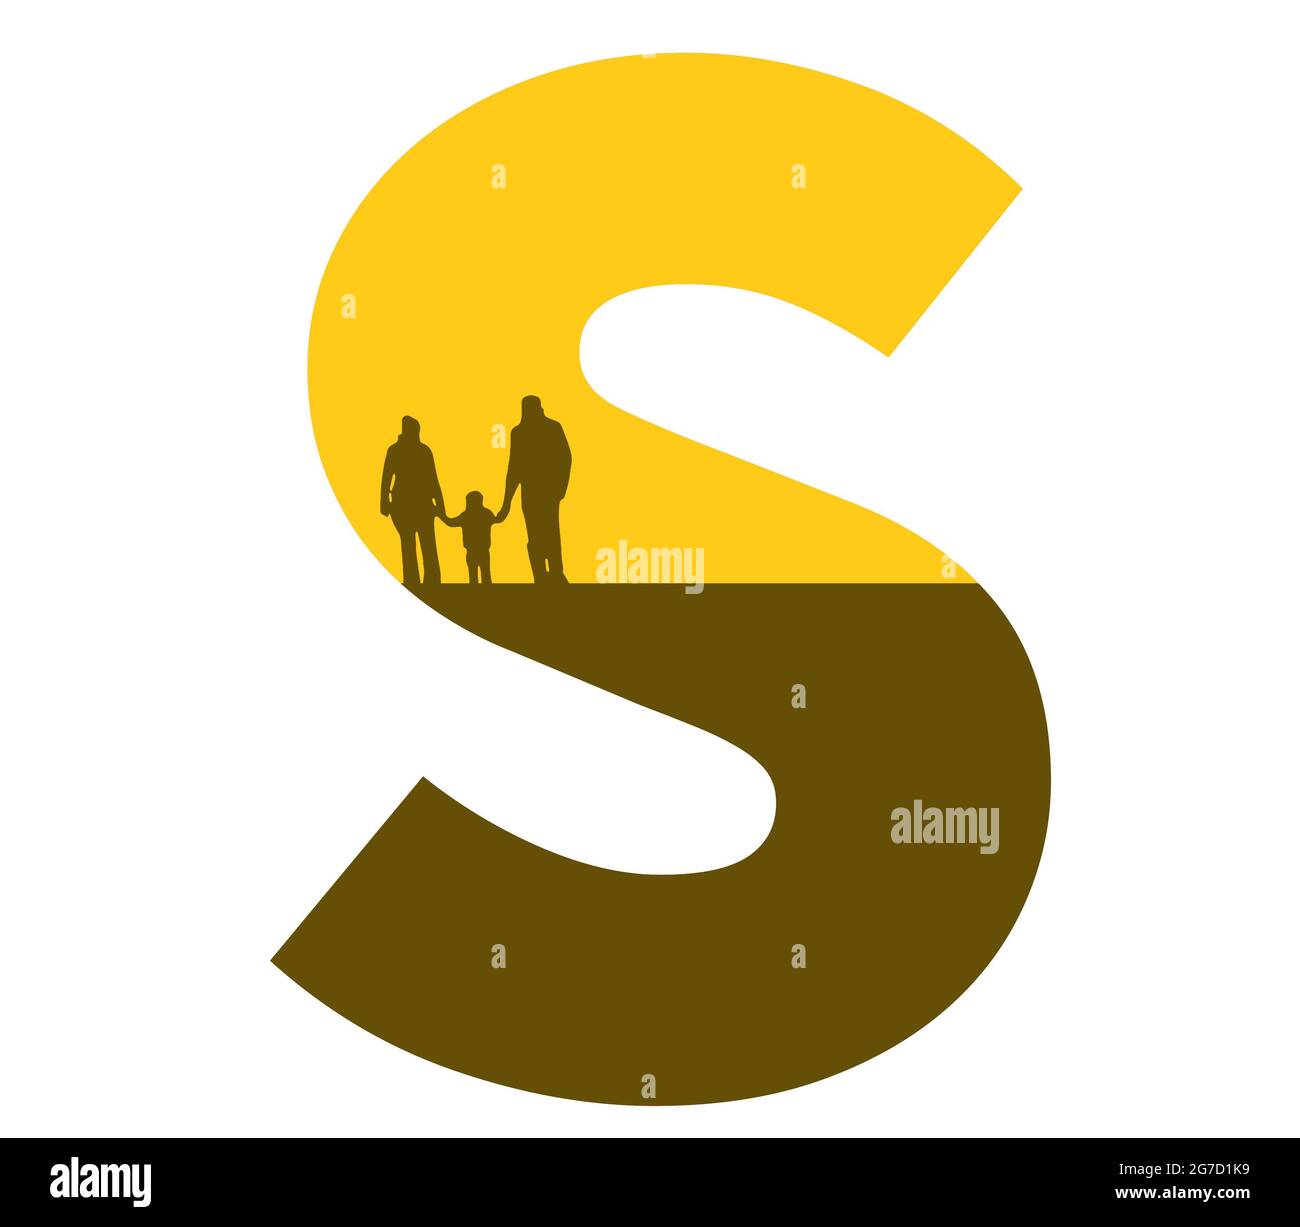 Lettre S de l'alphabet avec une silhouette de famille, de père, de mère et d'enfant, de couleur ocre et marron Banque D'Images